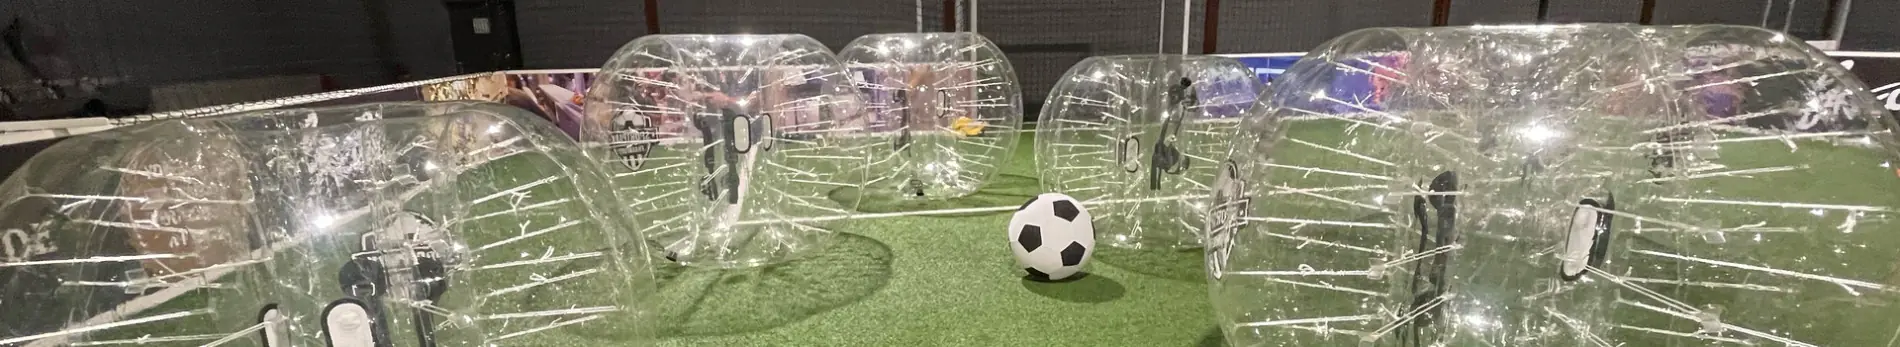 bubble soccer teaser2